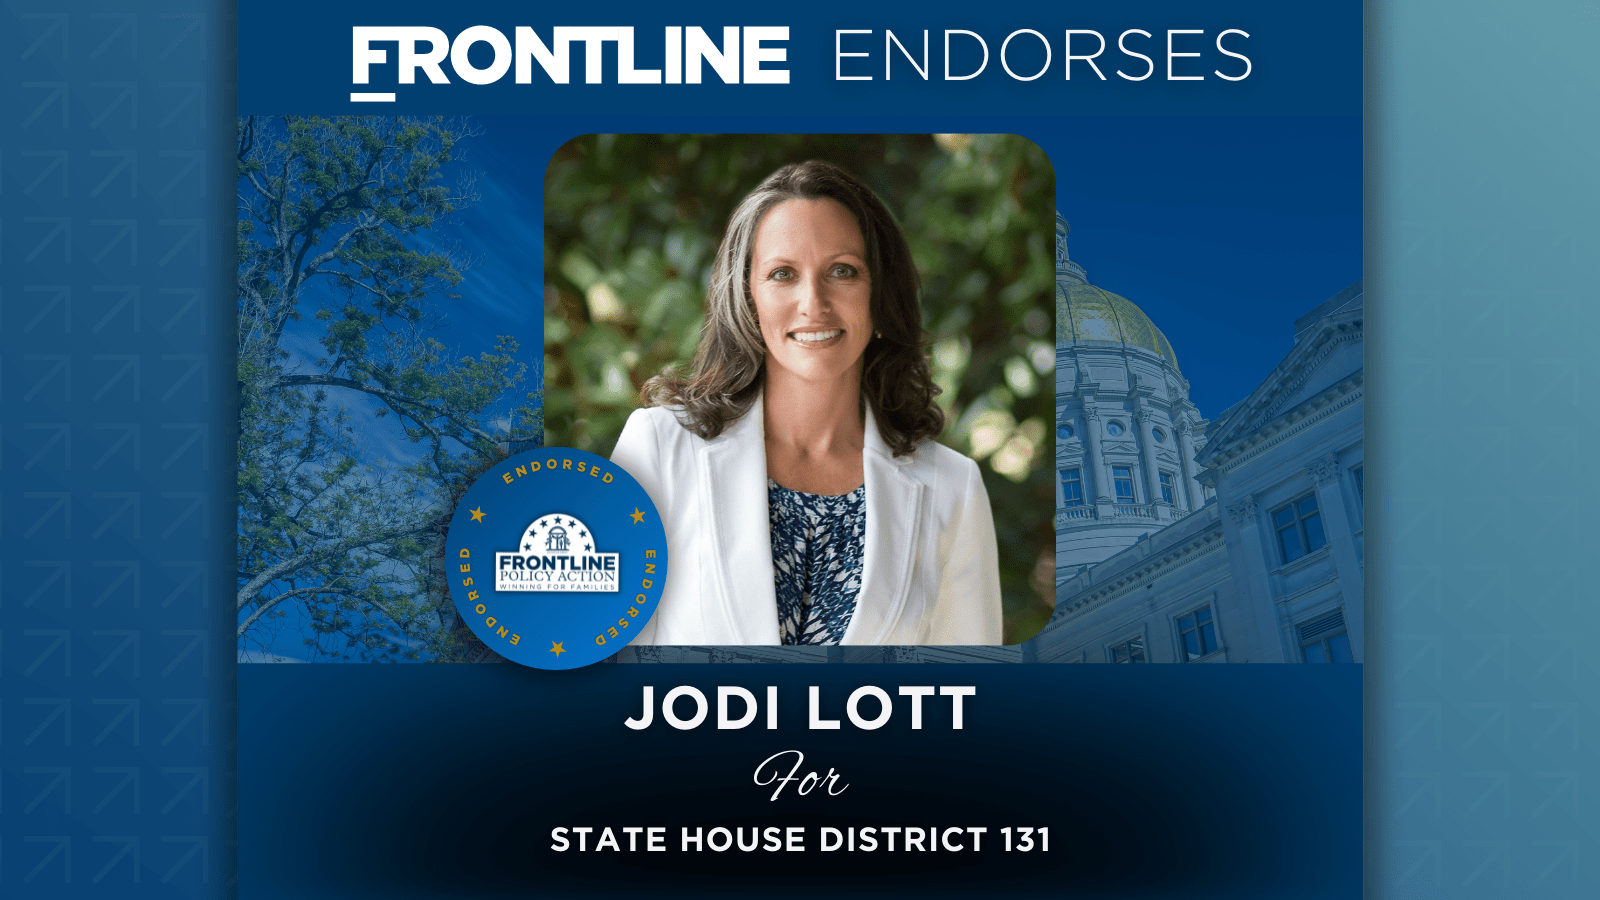 BREAKING: Frontline Endorses Jodi Lott for State House District 131